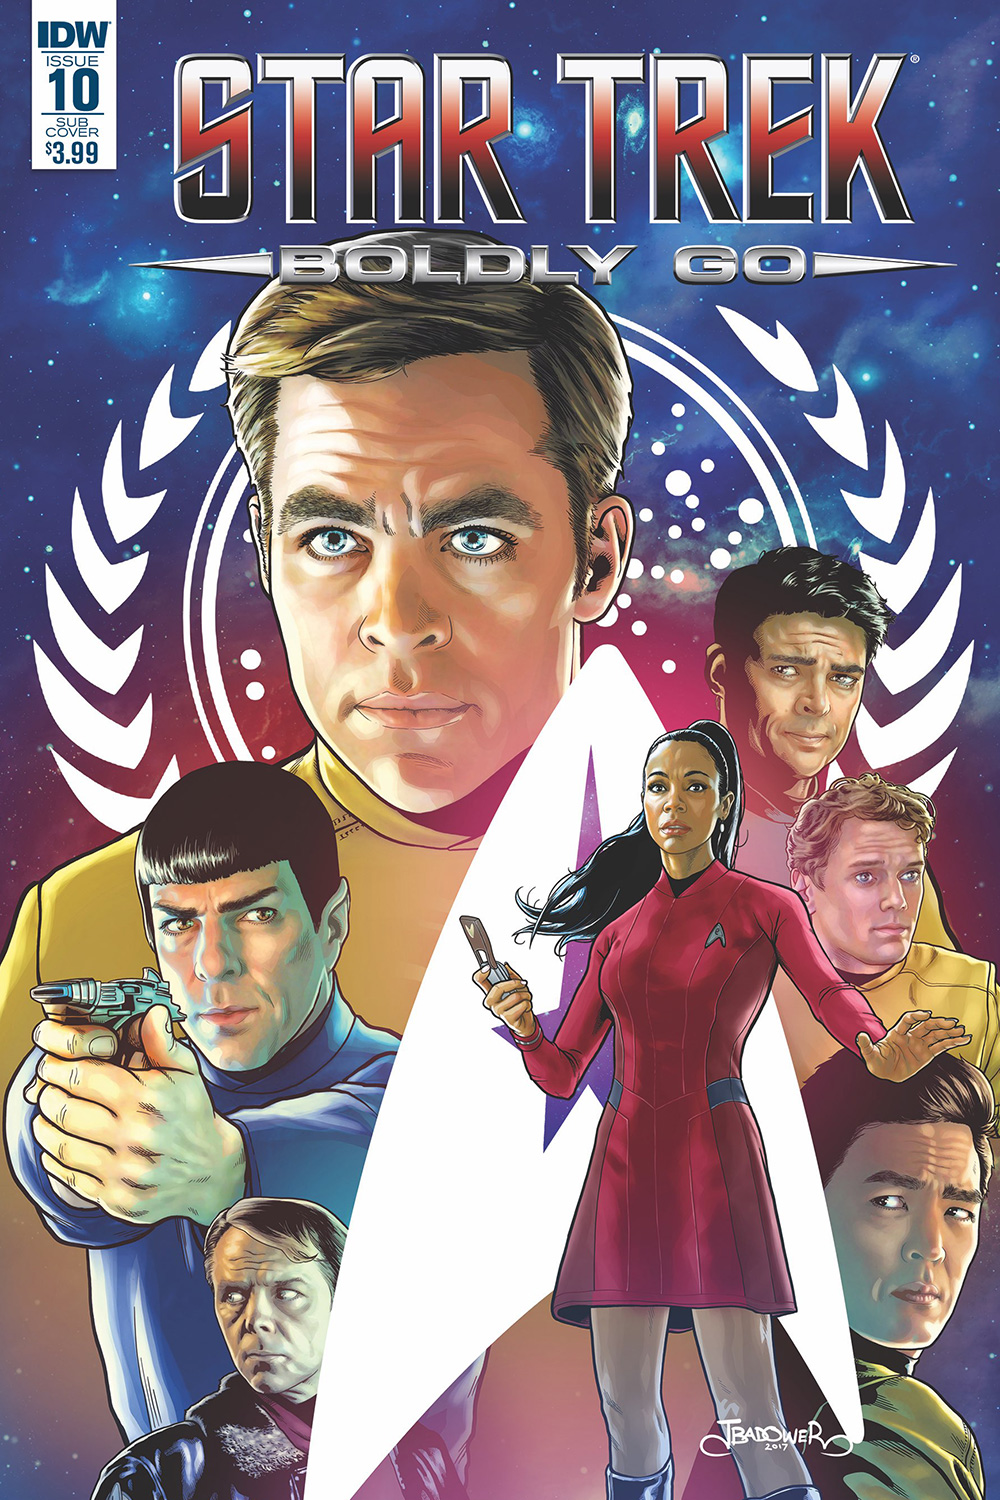 Star Trek Boldly Go Issue 10 Memory Alpha Fandom Powered By Wikia 8748